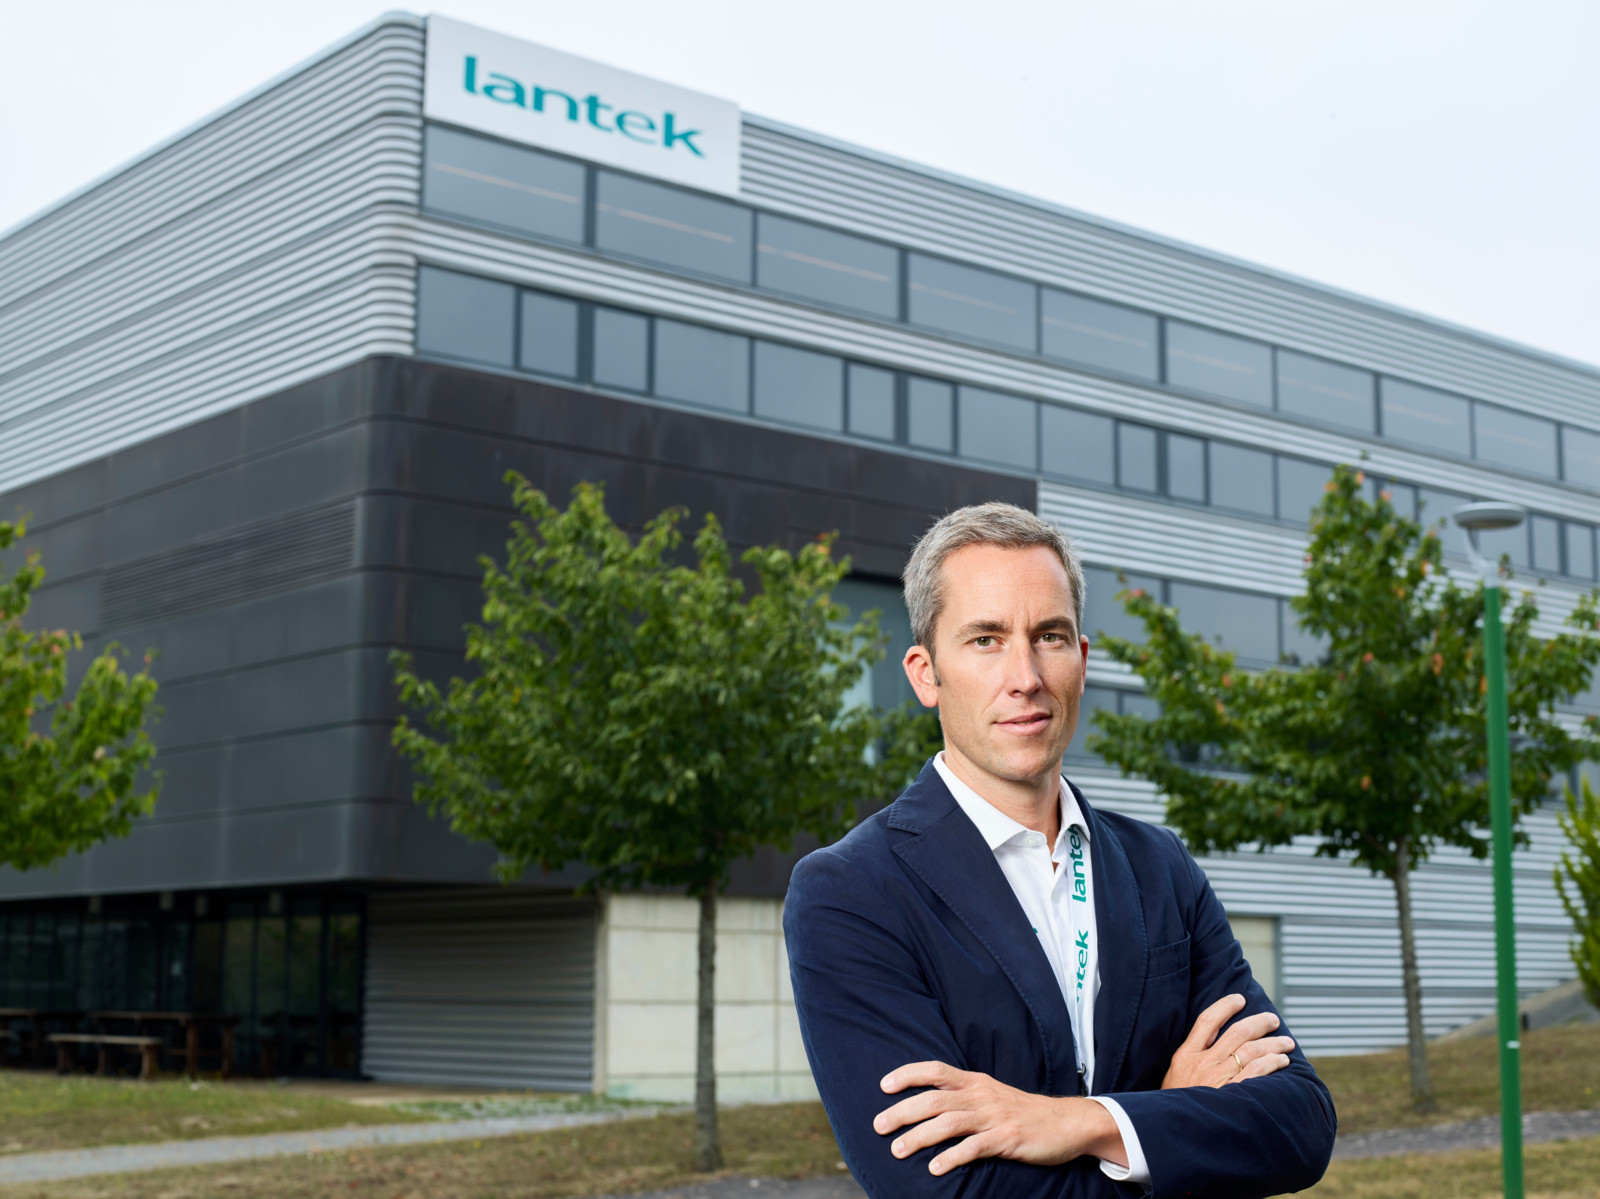 Lantek-CEO Alberto López de Biñaspre: „Wir sind stolz auf die Leistungen unseres Teams, das bahnbrechende Produkte entwickelt, mit denen sowohl wir selbst als auch unsere Kunden erfolgreich sein können.“